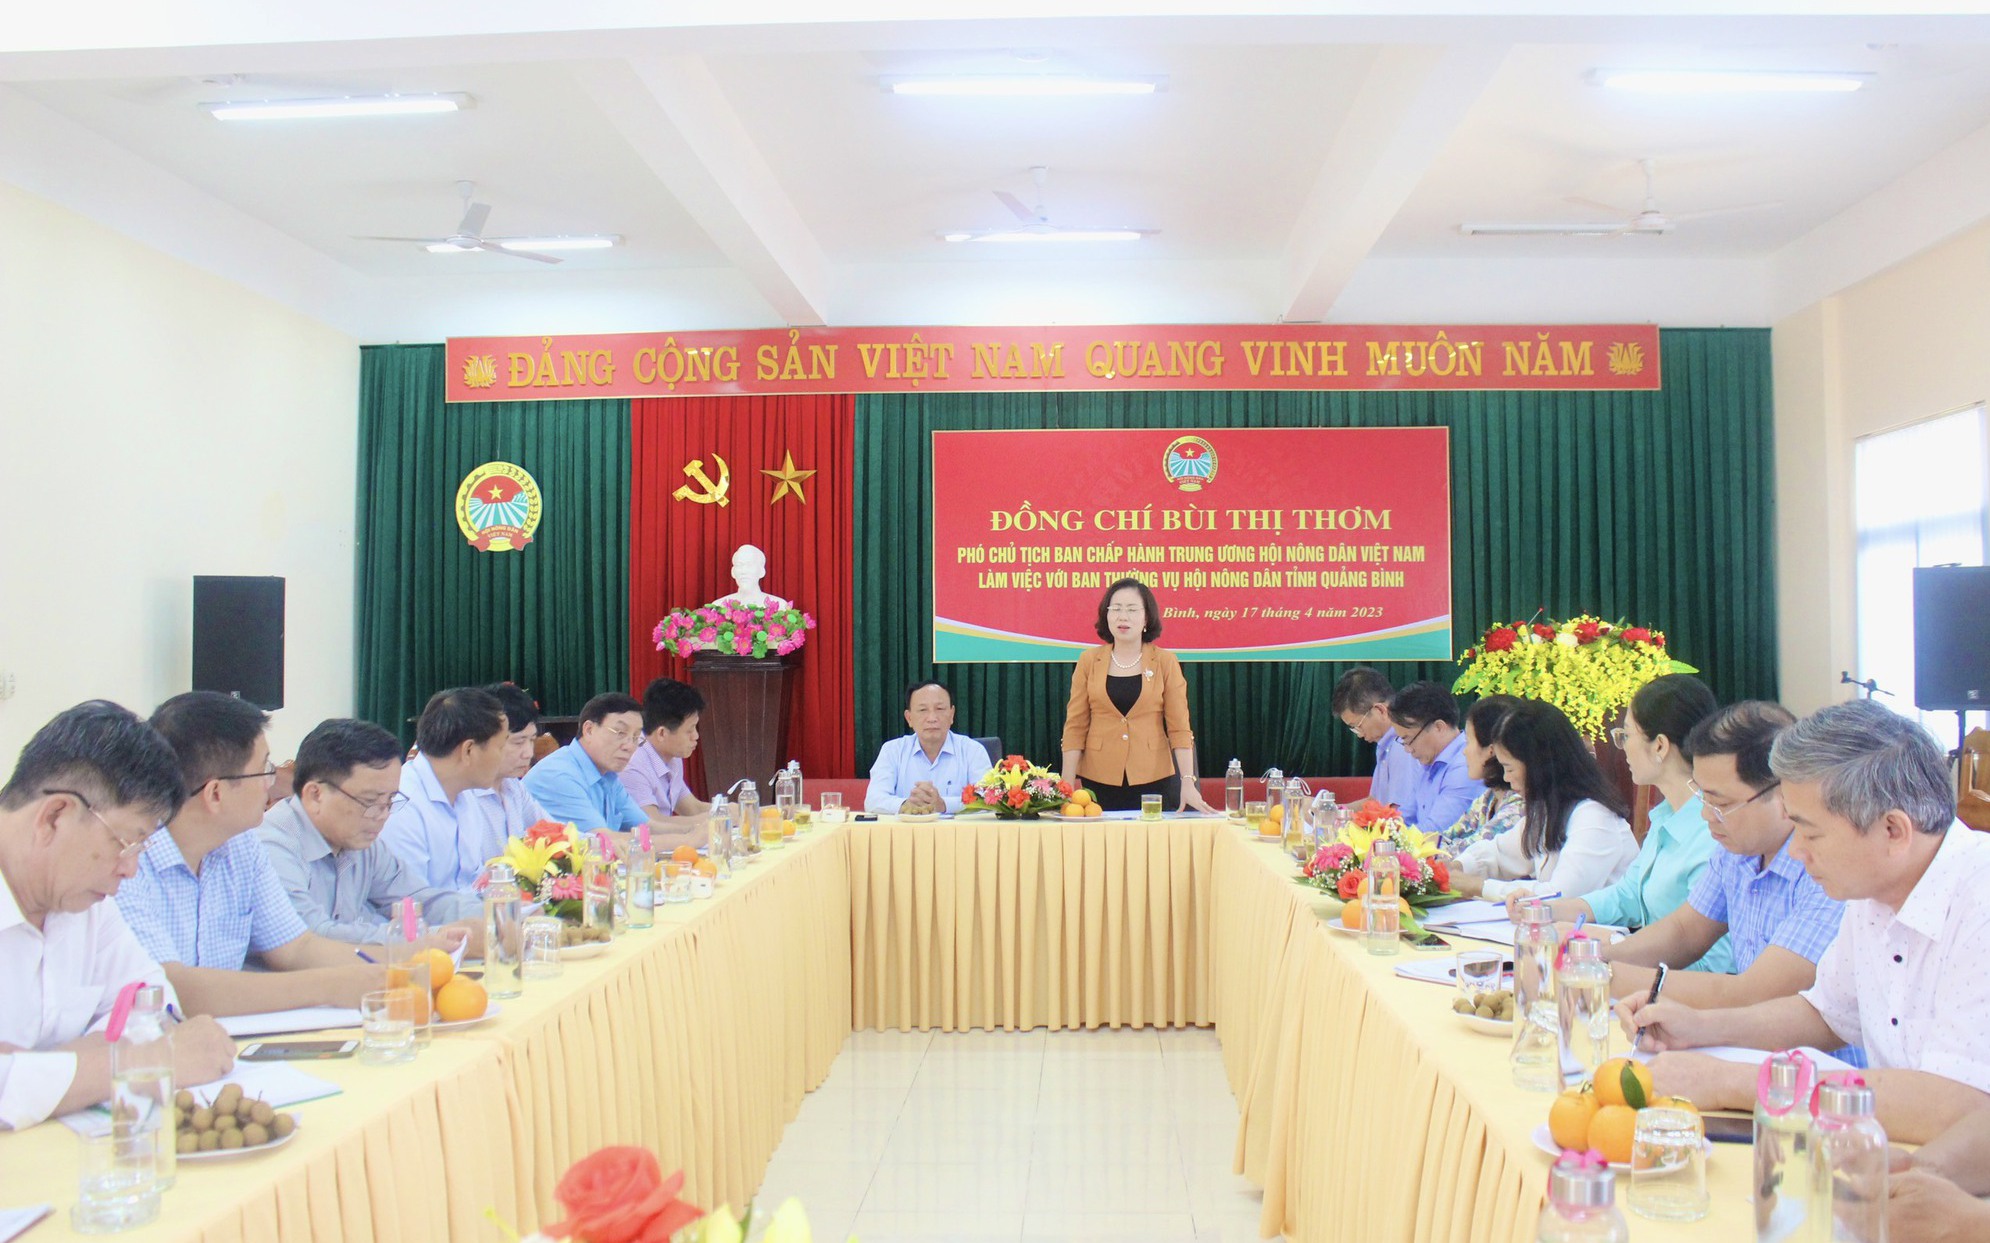 Video: Phó Chủ tịch Trung ương Hội NDVN Bùi Thị Thơm làm việc với tỉnh Quảng Bình